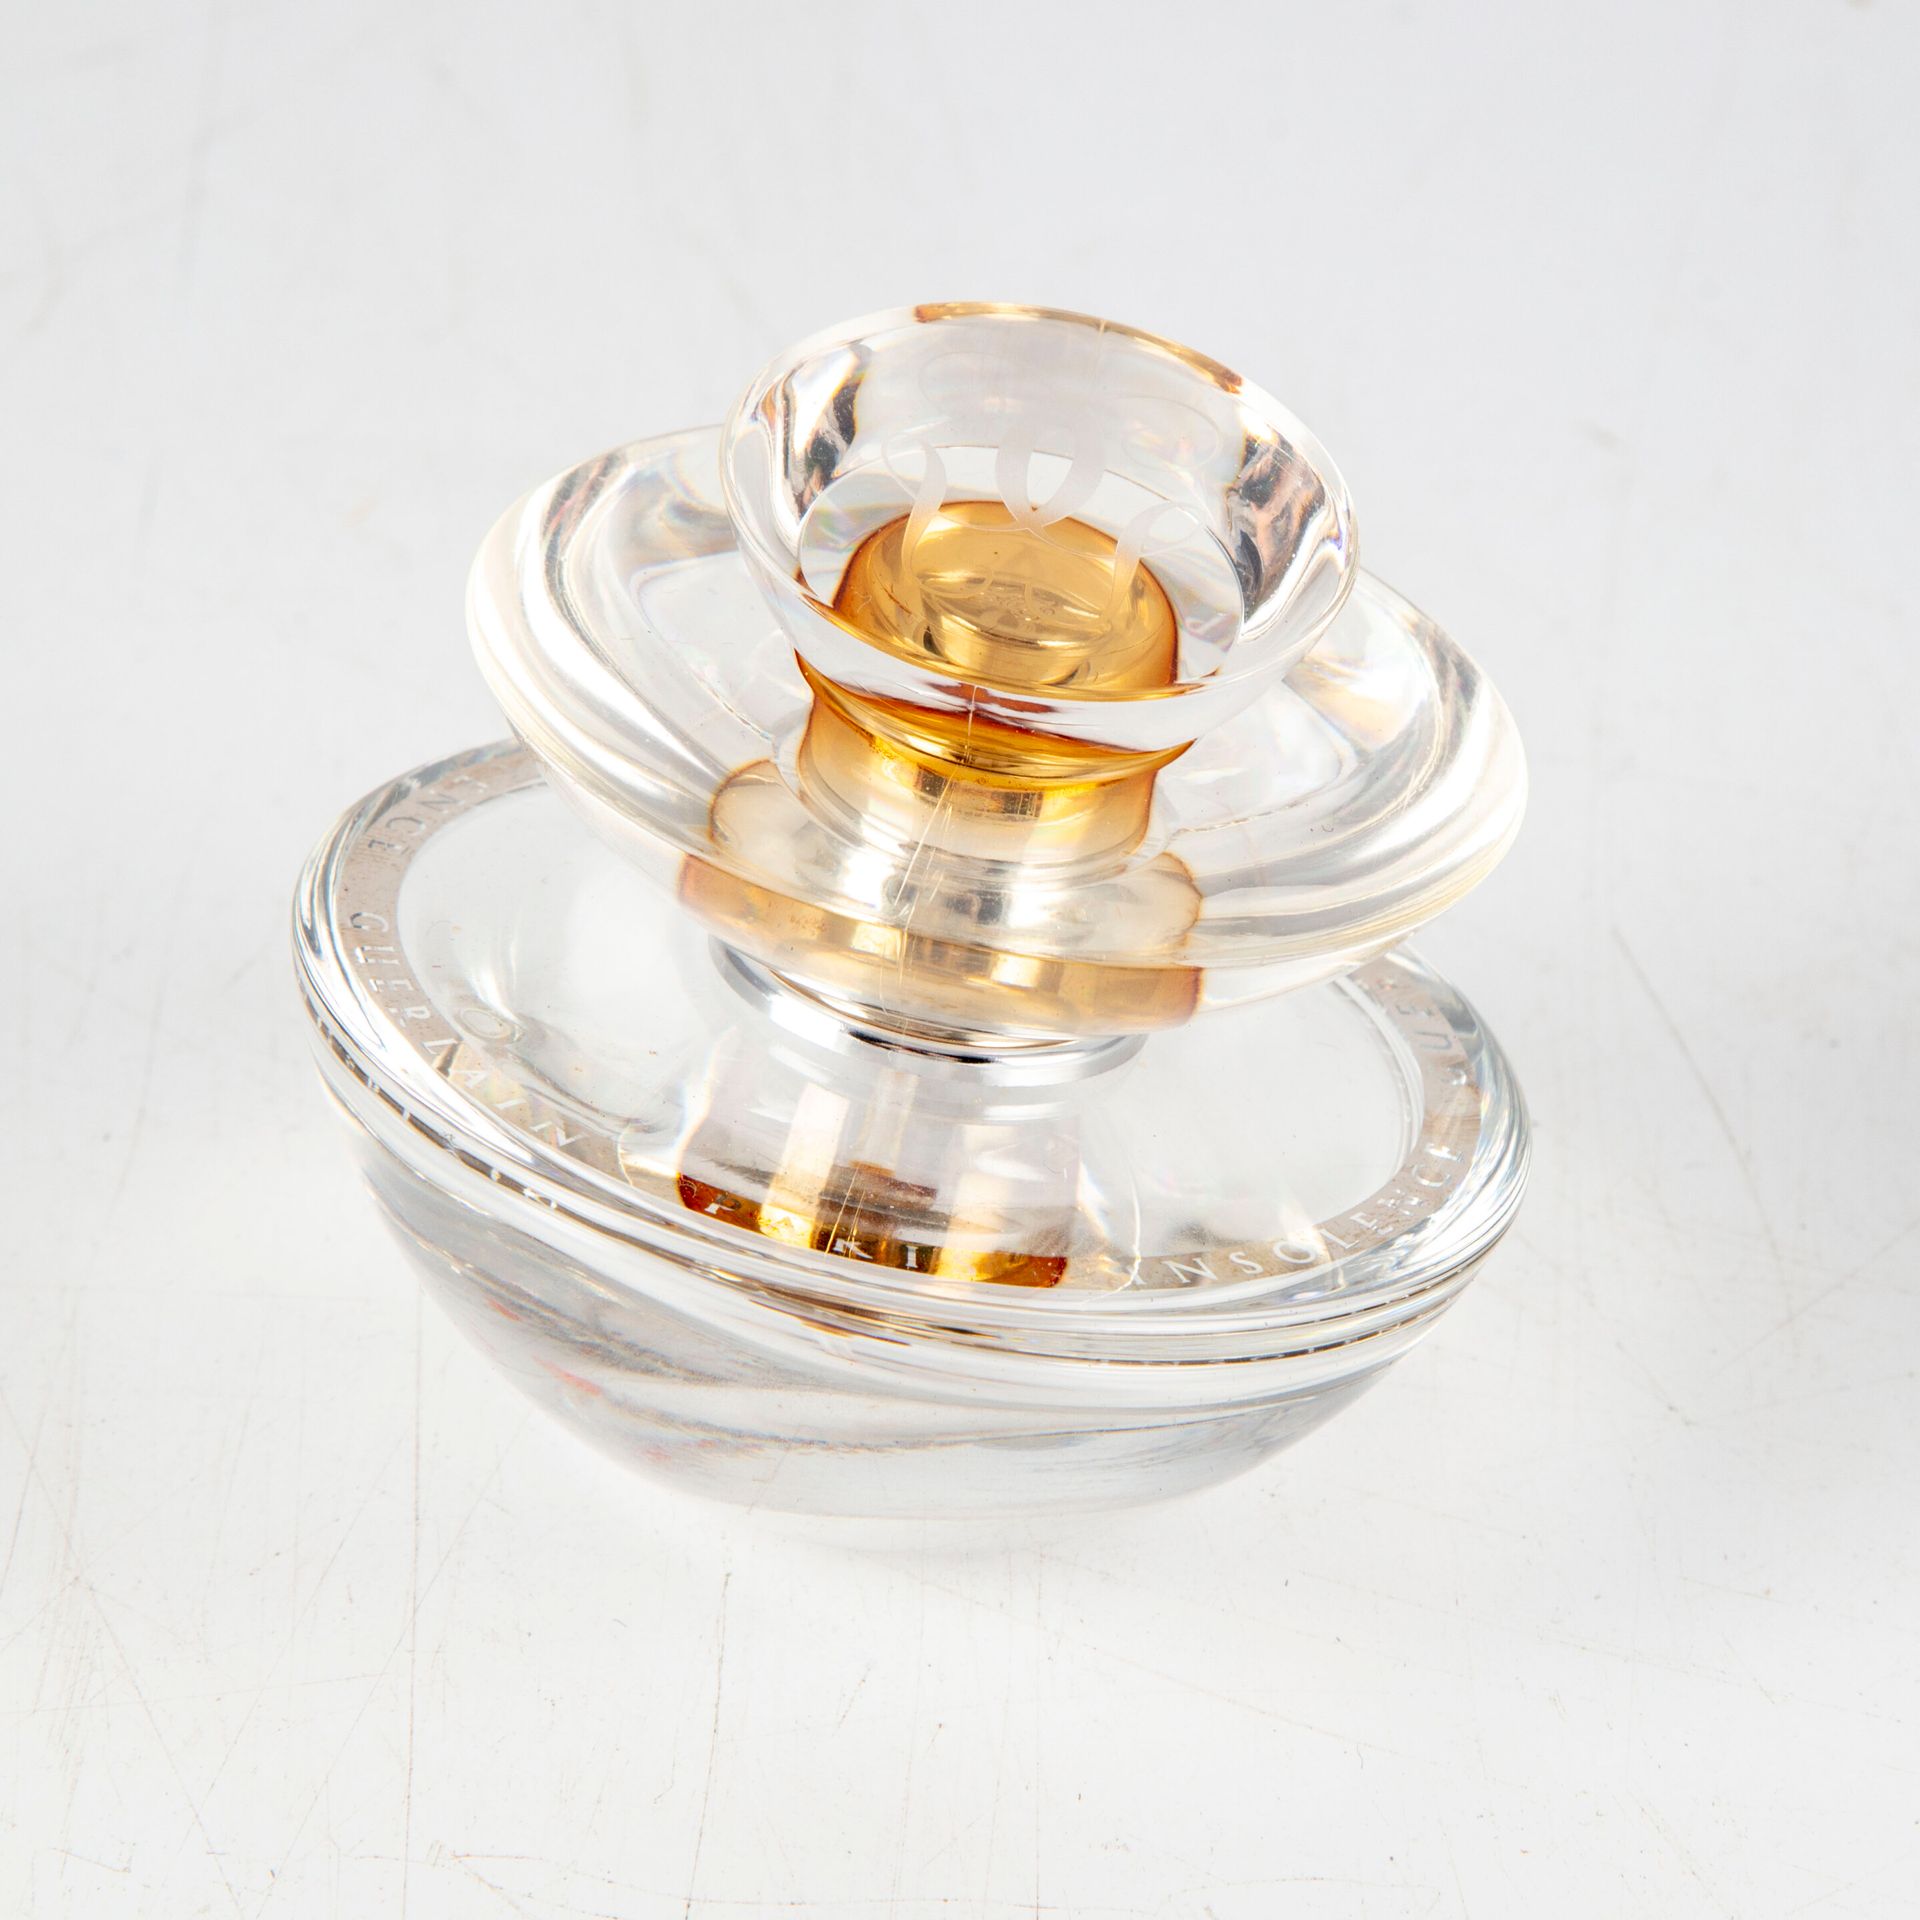 Null Casa GUERLAIN - París 

1 frasco de perfume Insolence 30 ml

H. 6 cm 

Vací&hellip;